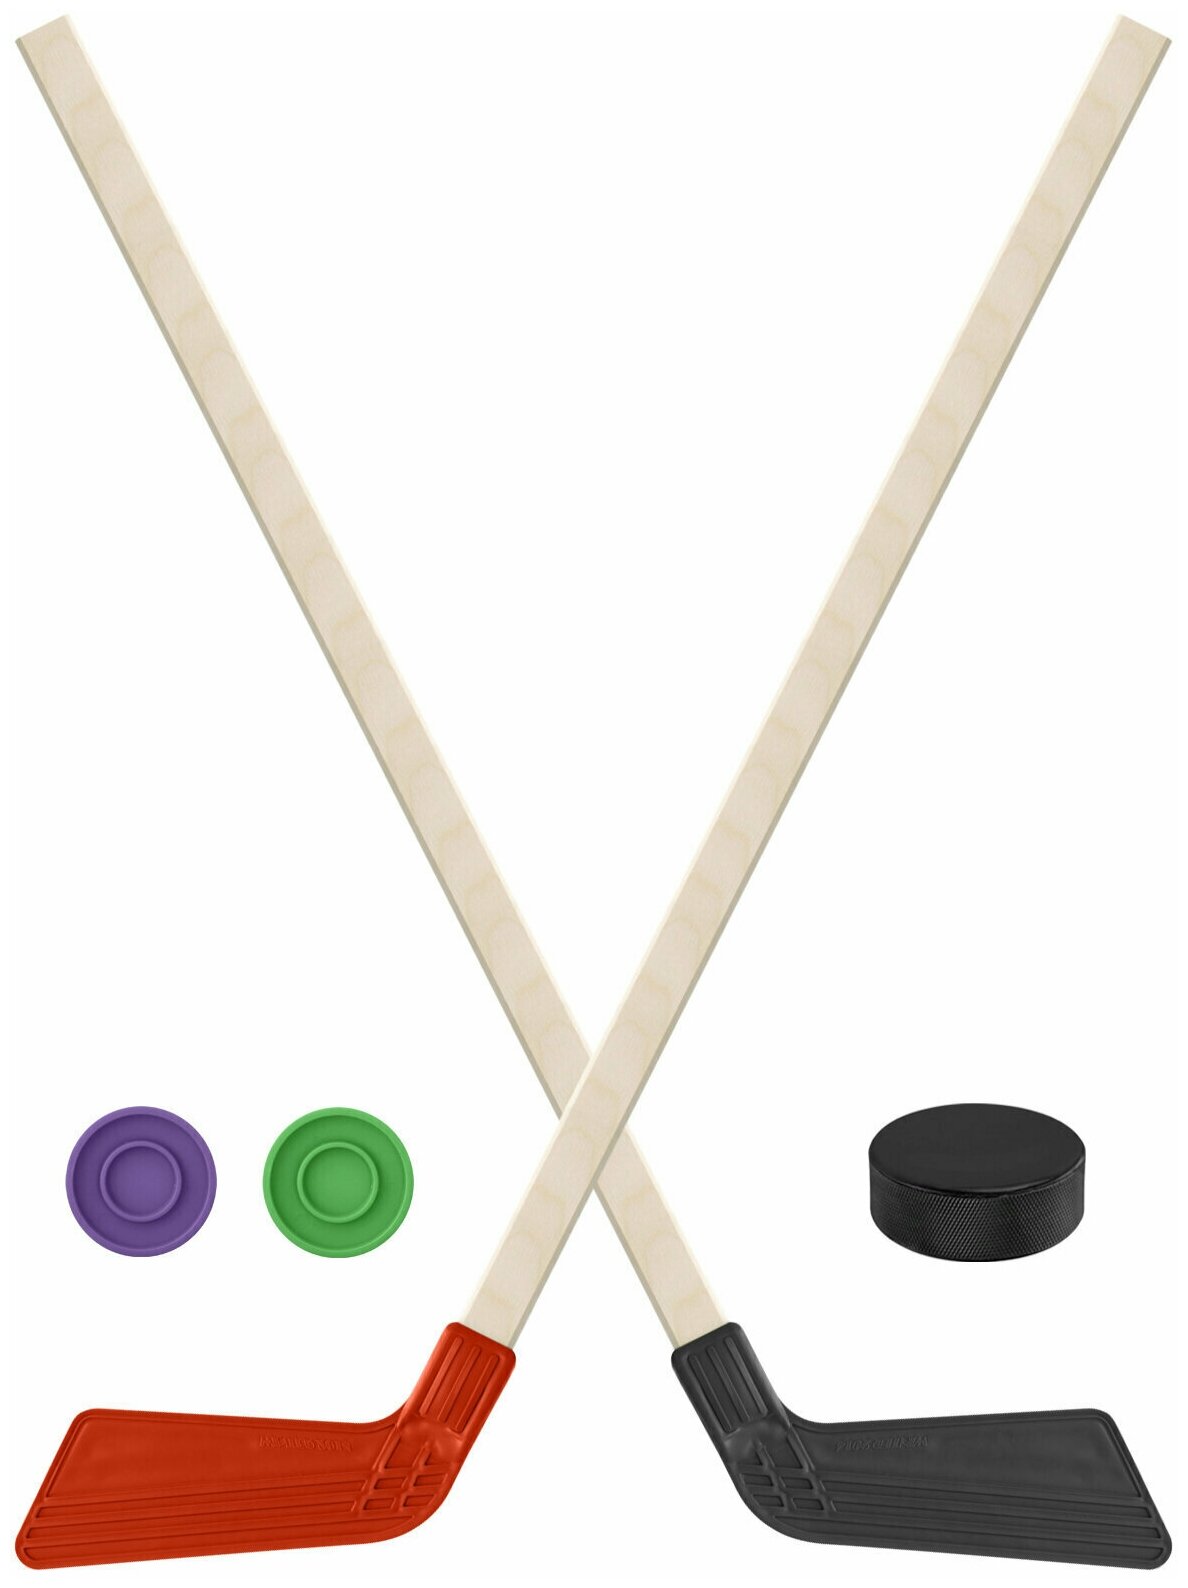 Детский хоккейный набор для игр на улице, свежем воздухе Клюшка хоккейная детская 2шт красная и чёрная 80 см. + 2 шайбы + Шайба хоккейная 75 мм.